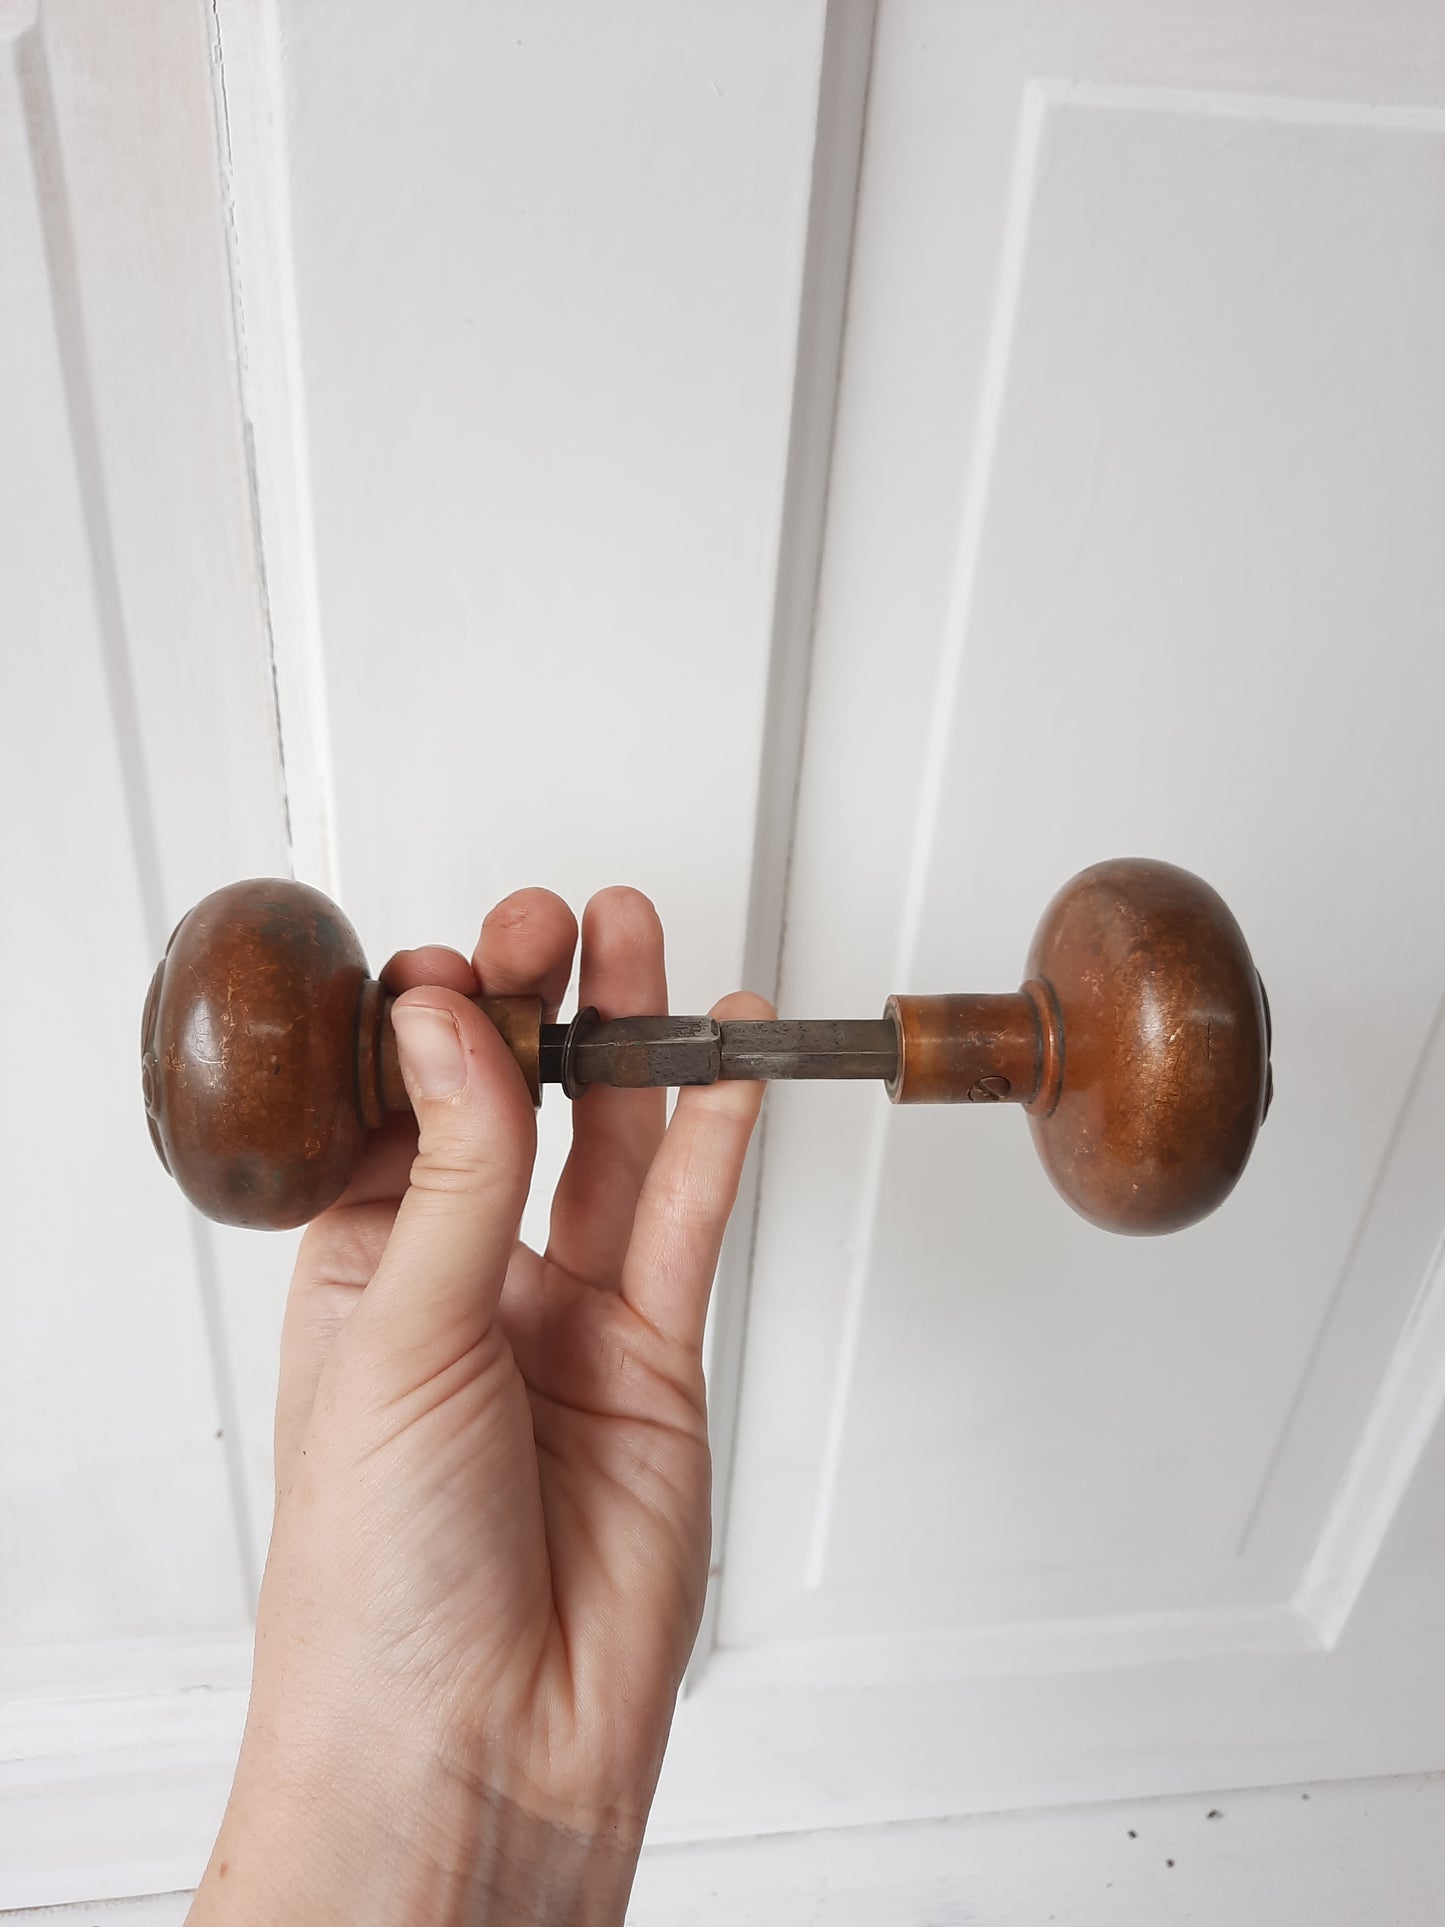 Norwalk Spiral Pattern Doorknob Set with Large Entry Knob, Antique Swirl Design Bronze Door Knob Pair